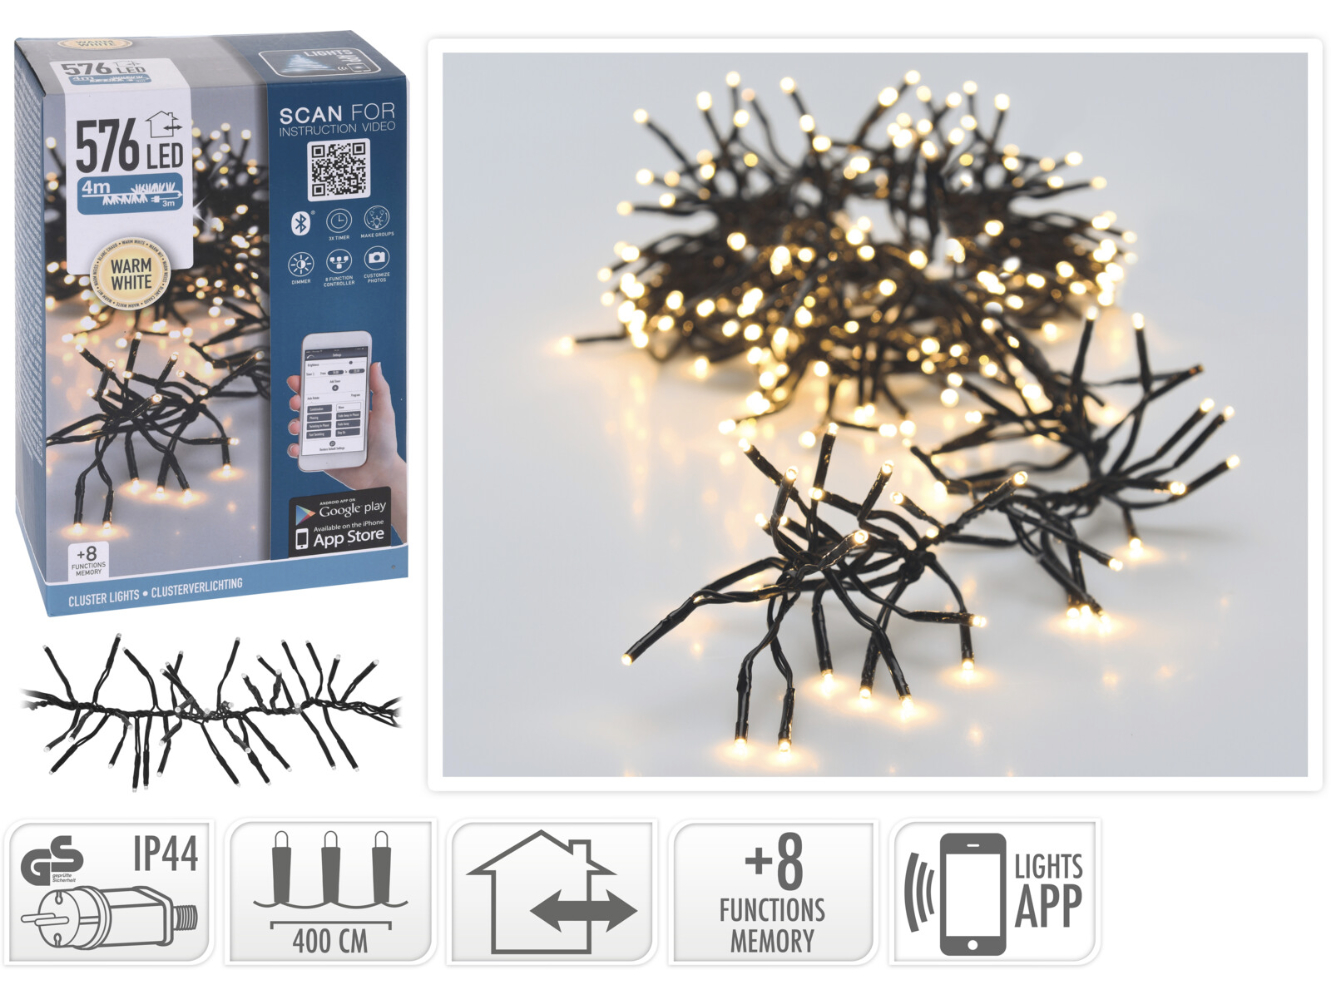 Bluetooth Cluster Büschel Lichterkette warmweiß für Innen & Aussen, 576 LED